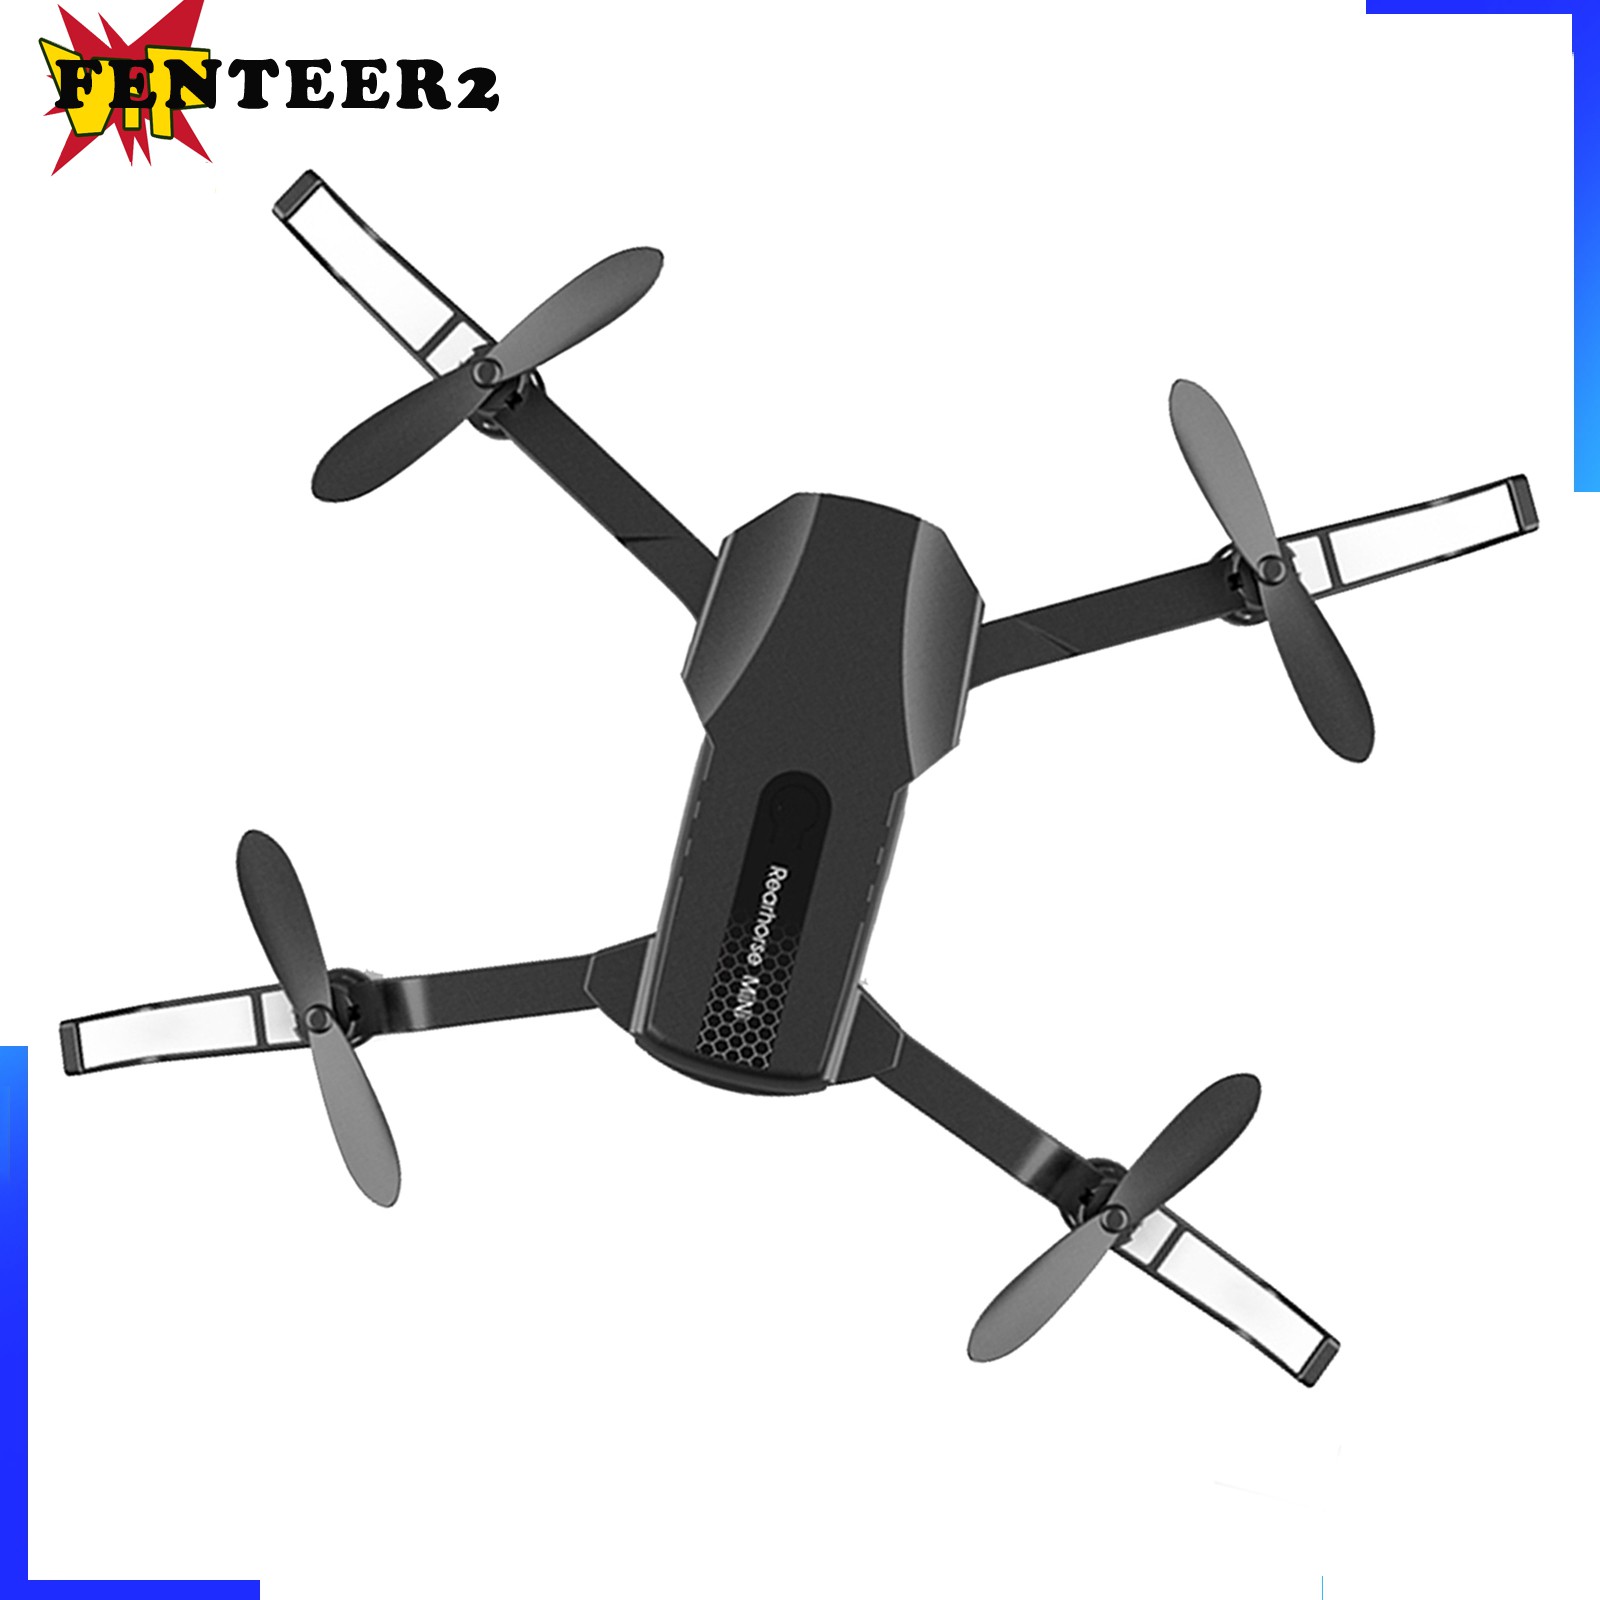 (Fenteer2 3c) Drone Mini Có Thể Gấp Lại 360 Độ Fpv Video Wifi 4k Hd